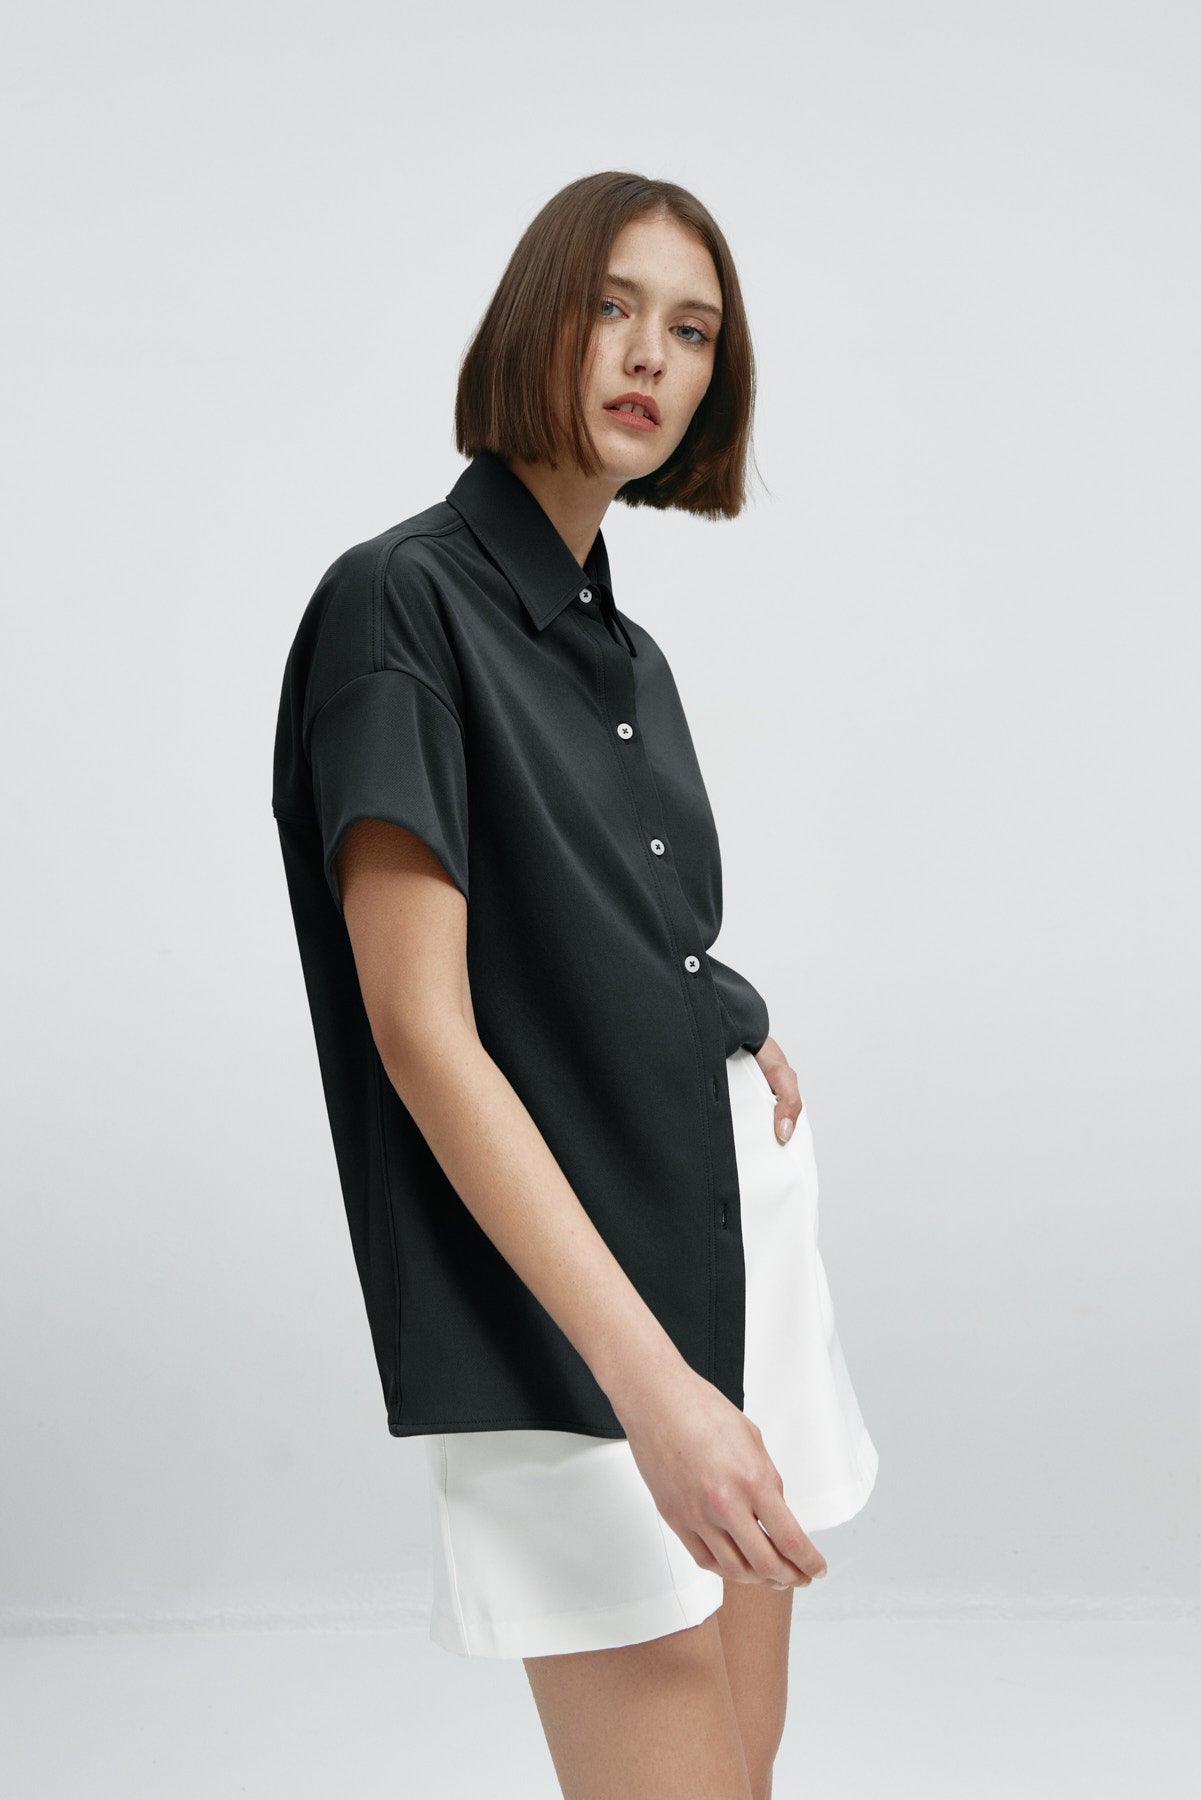 Camisa manga corta mujer negra de Sepiia, estilo y versatilidad en una prenda cómoda y resistente. Foto flexibilidad